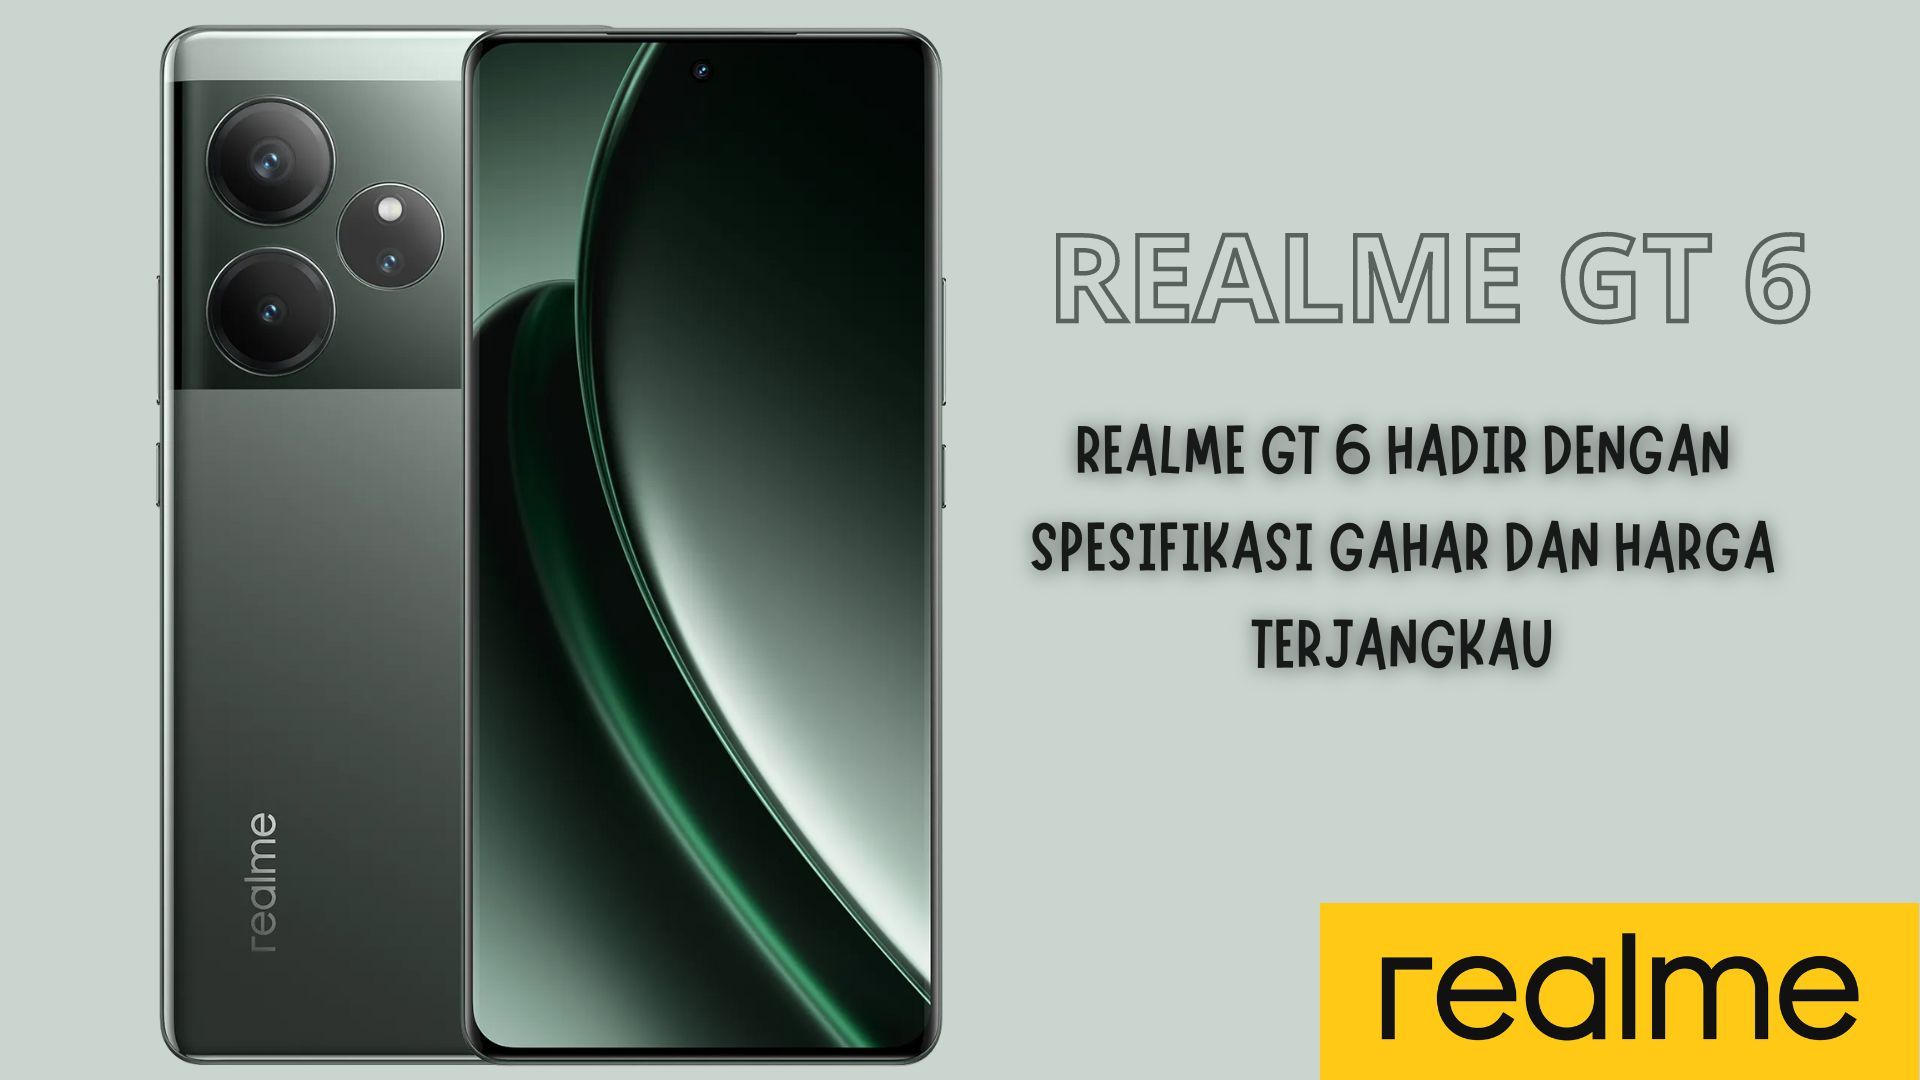 Dominasi Flagship Killer: Realme GT 6 Hadir dengan Spesifikasi Gahar dan Harga Terjangkau